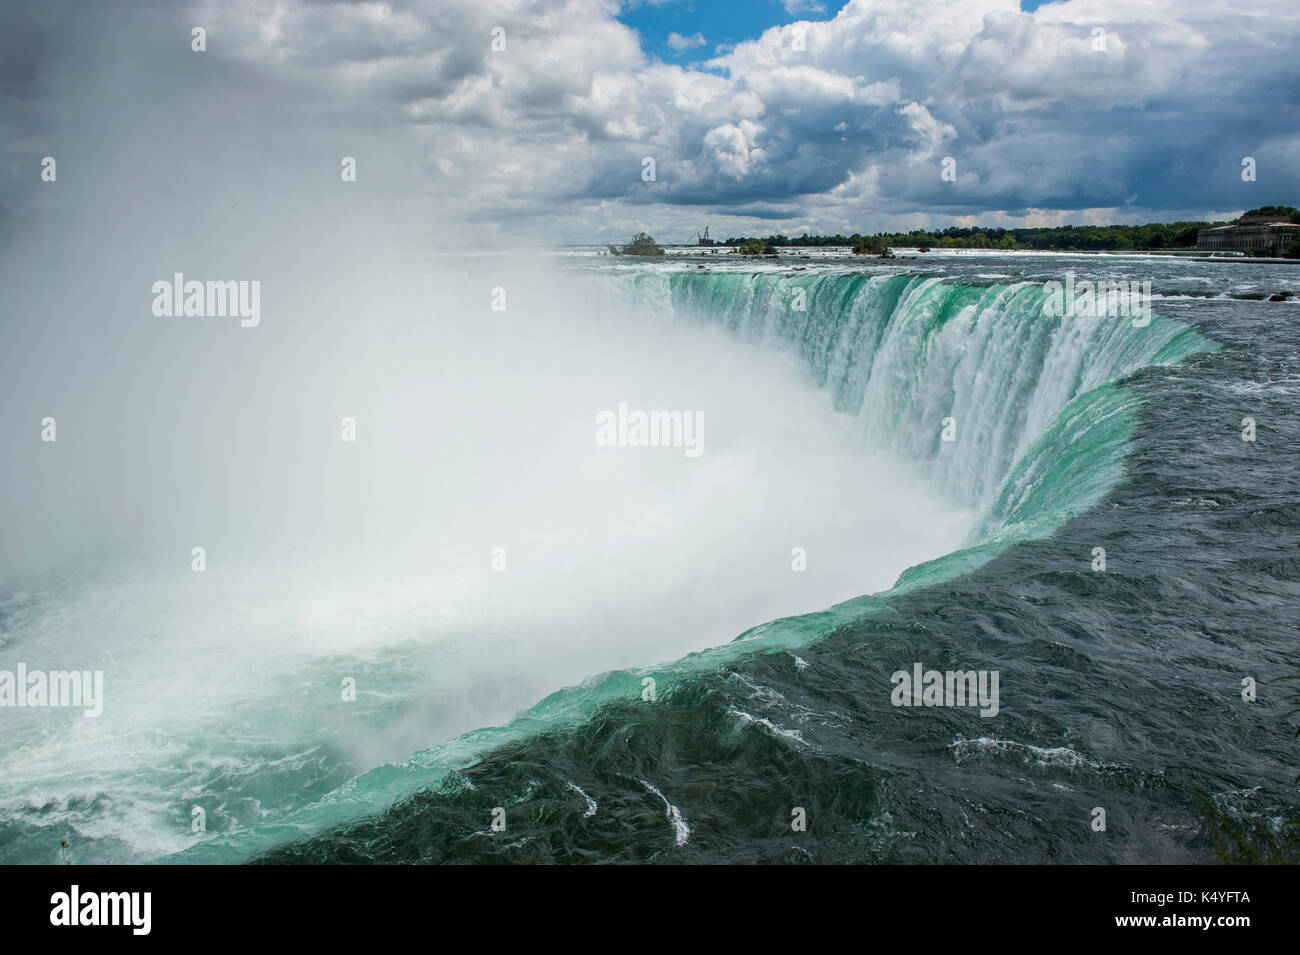 Aperçu Au cours de Horseshoe Falls, les chutes, Niagara Falls, Ontario, canada Banque D'Images